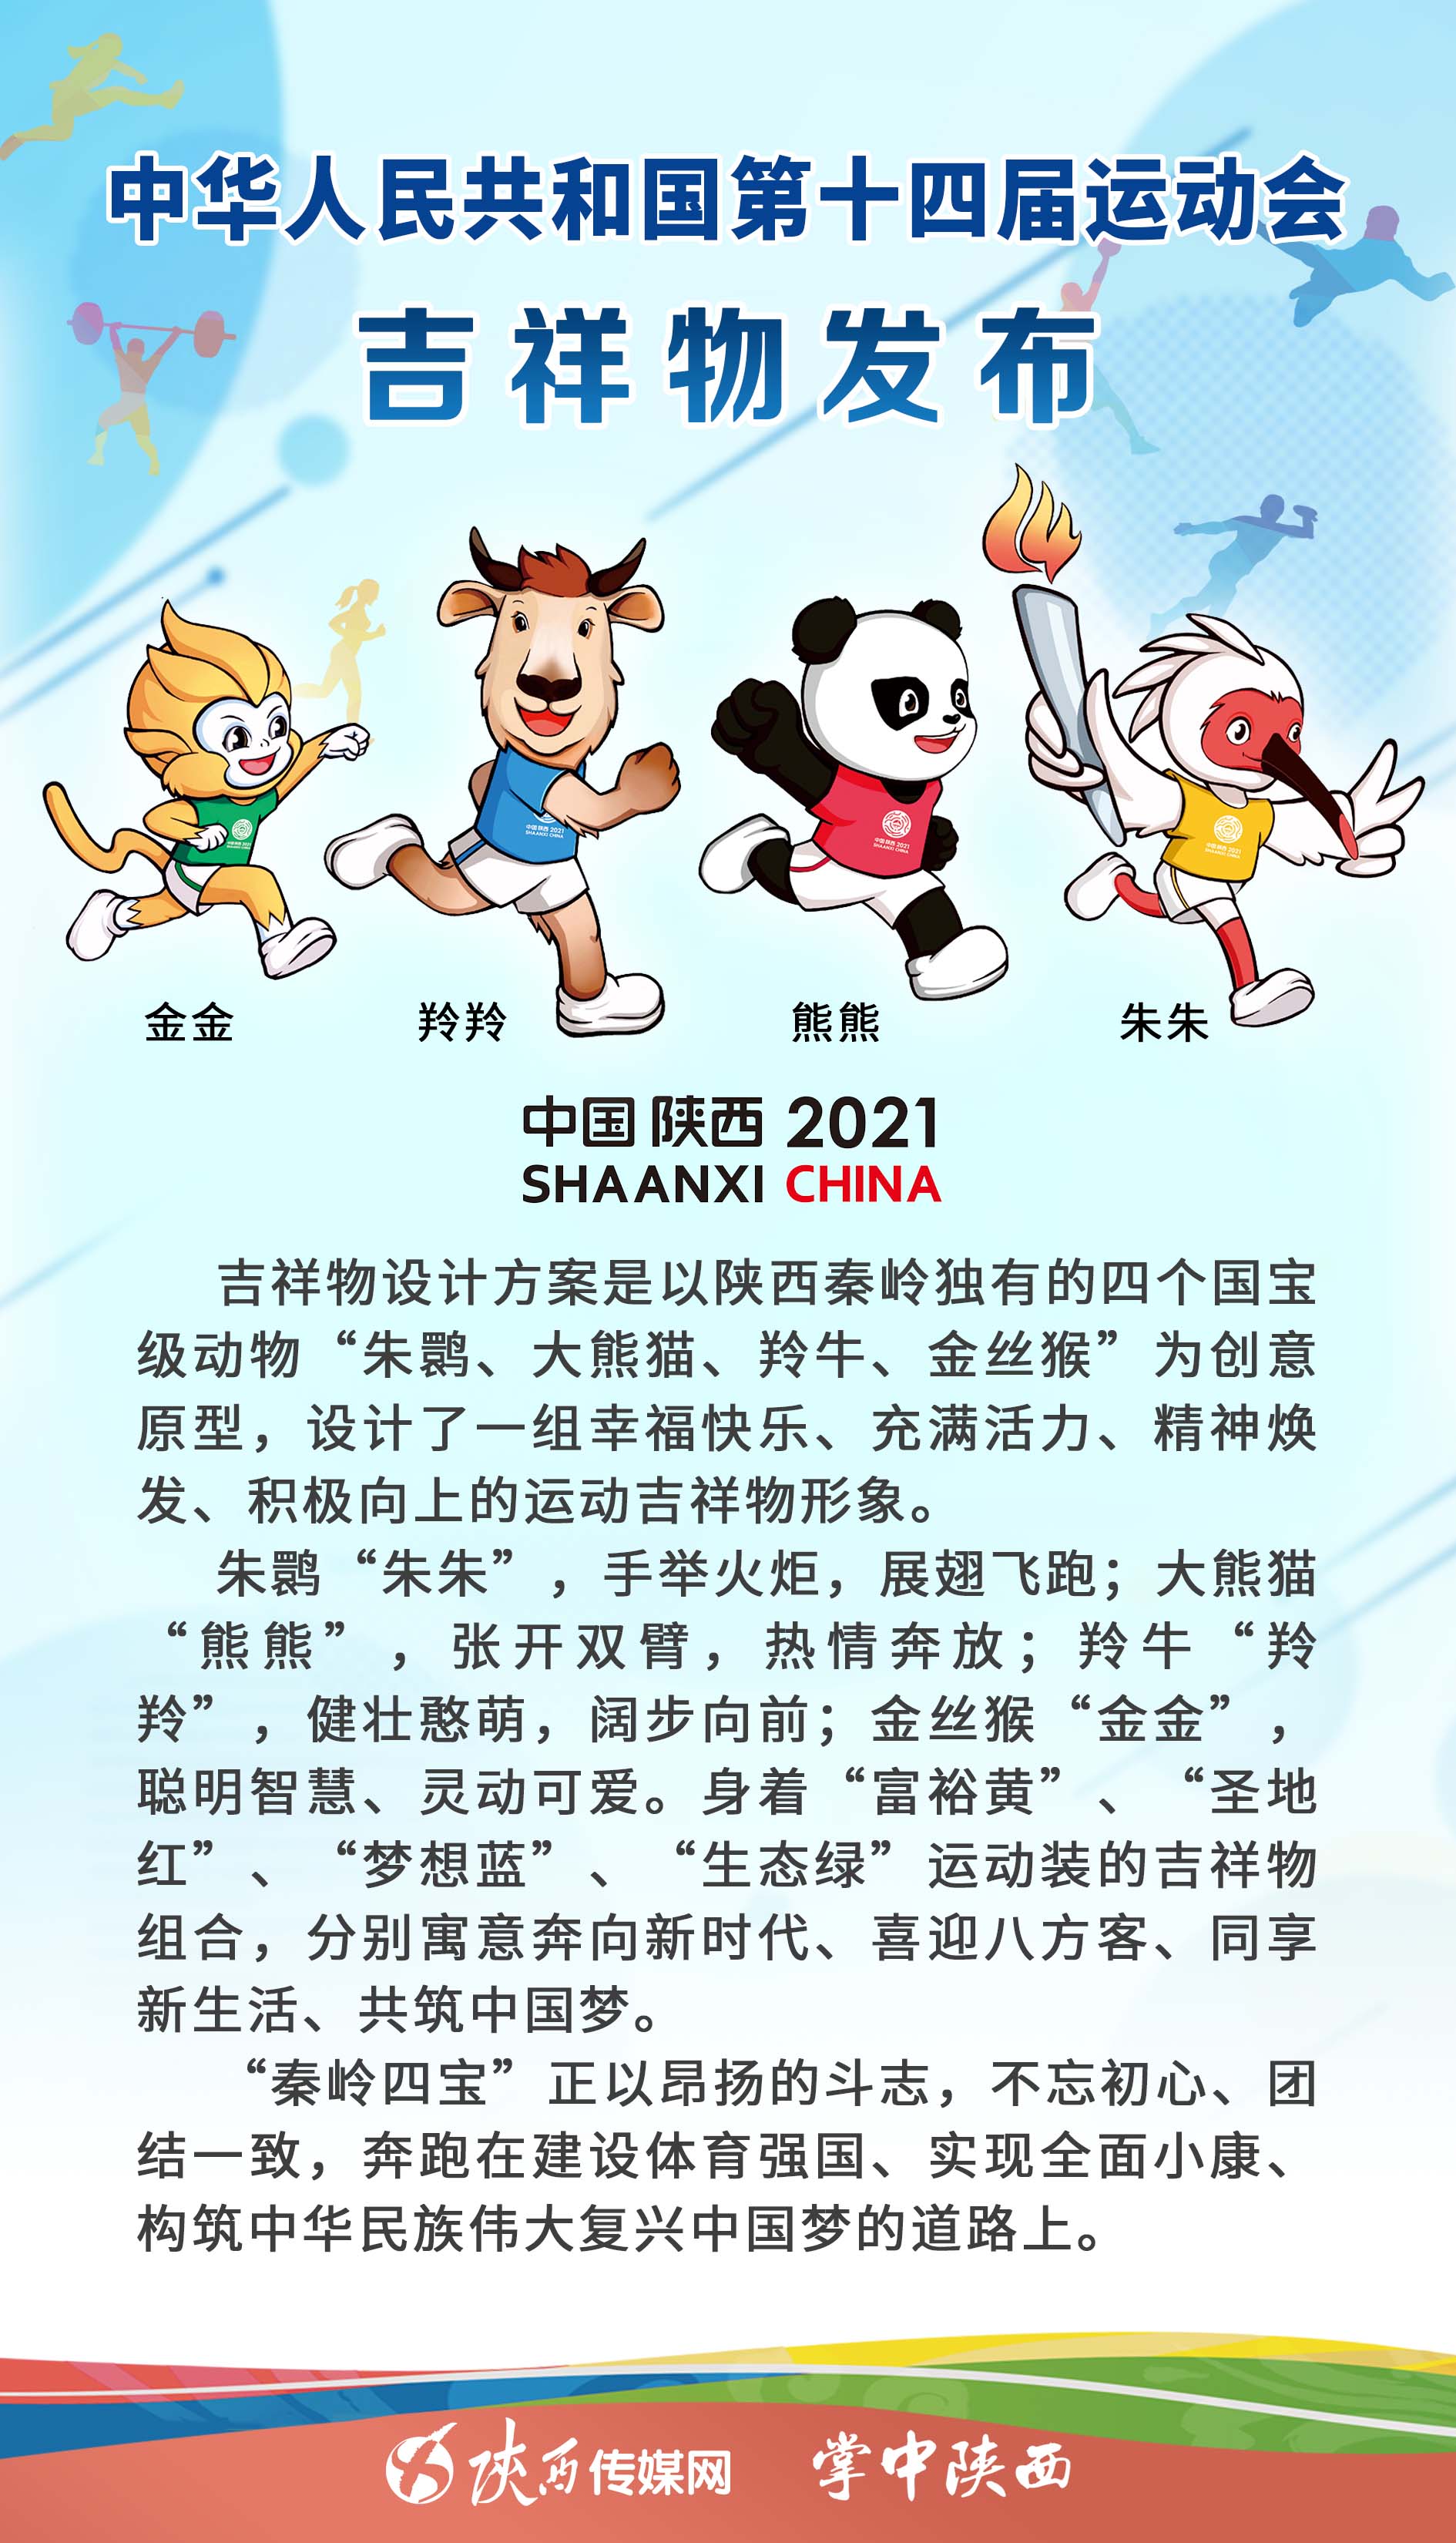 第十四届全运会会徽吉祥物在陕西西安精彩亮相